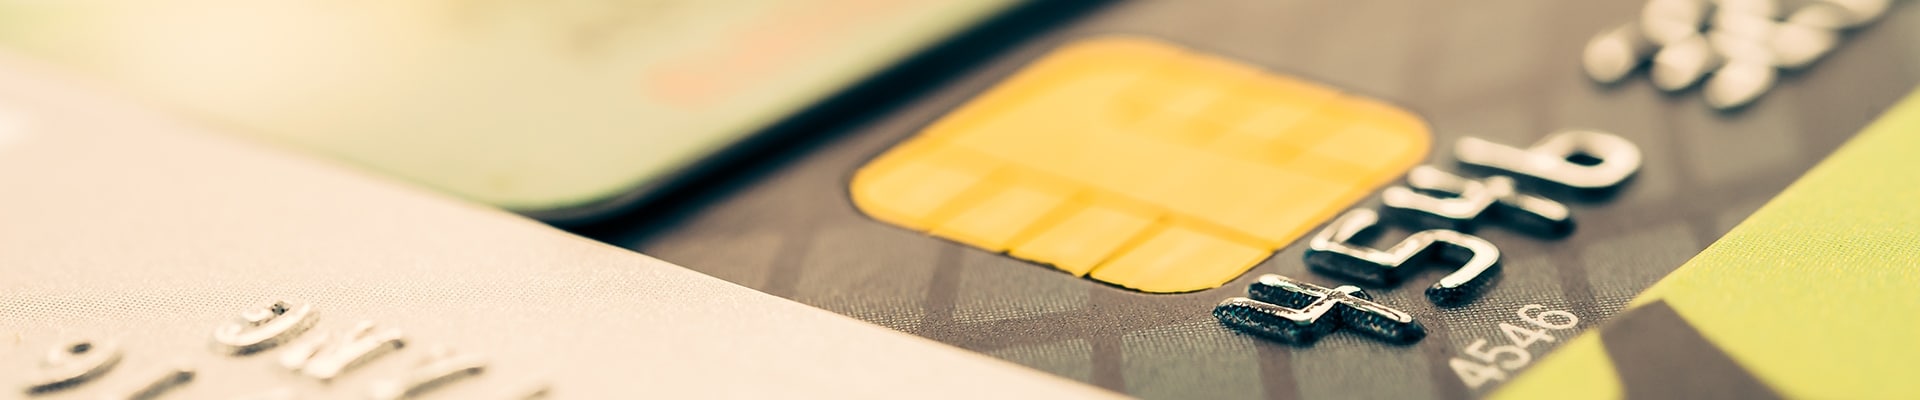 Closeup of a yellow credit card.